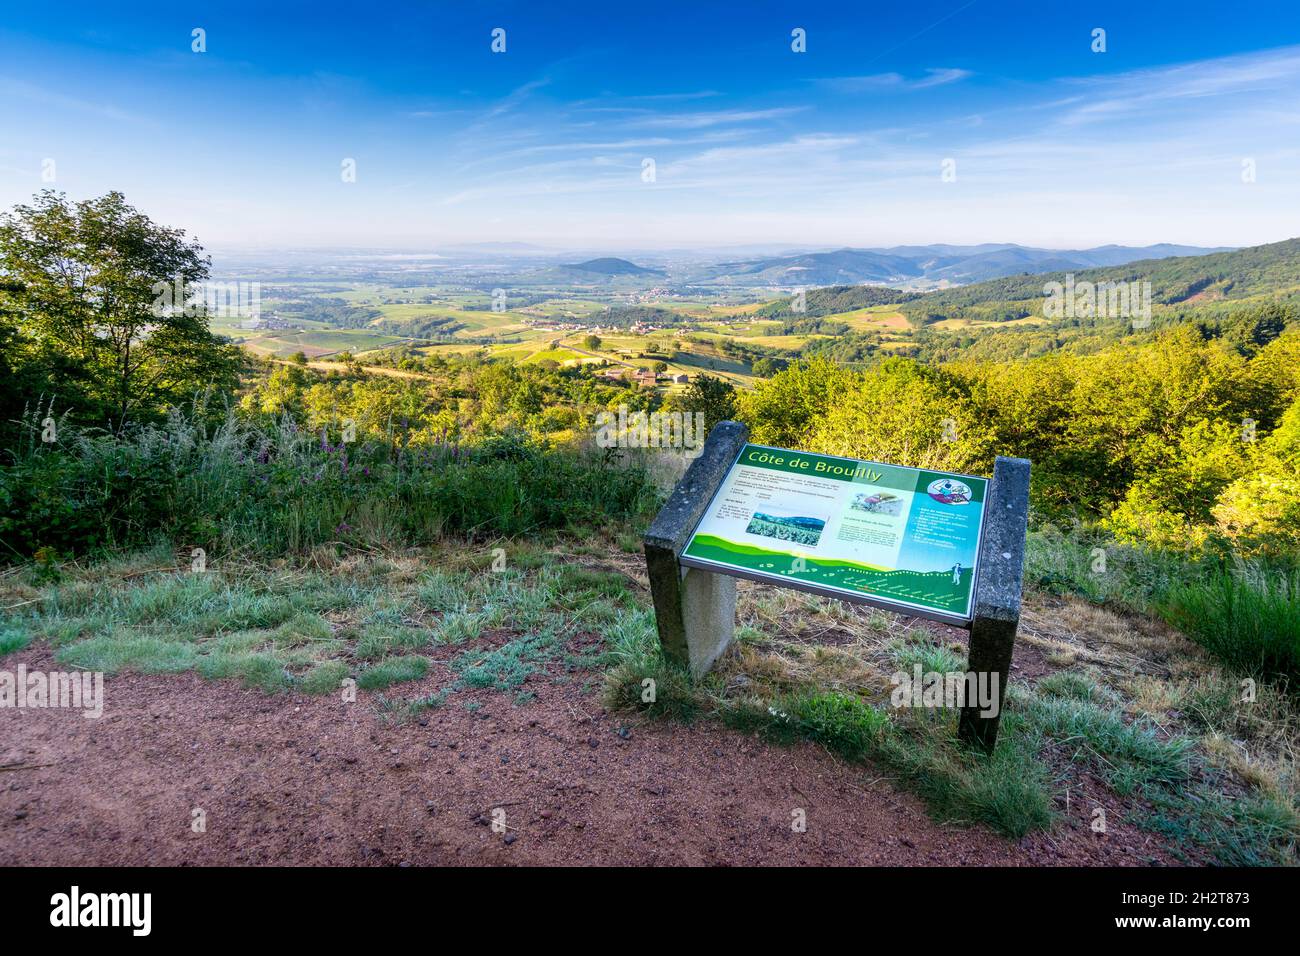 Le Mont Brouilly et le Beaujolais, vue depuis la terrasse de Chiroubles Foto Stock